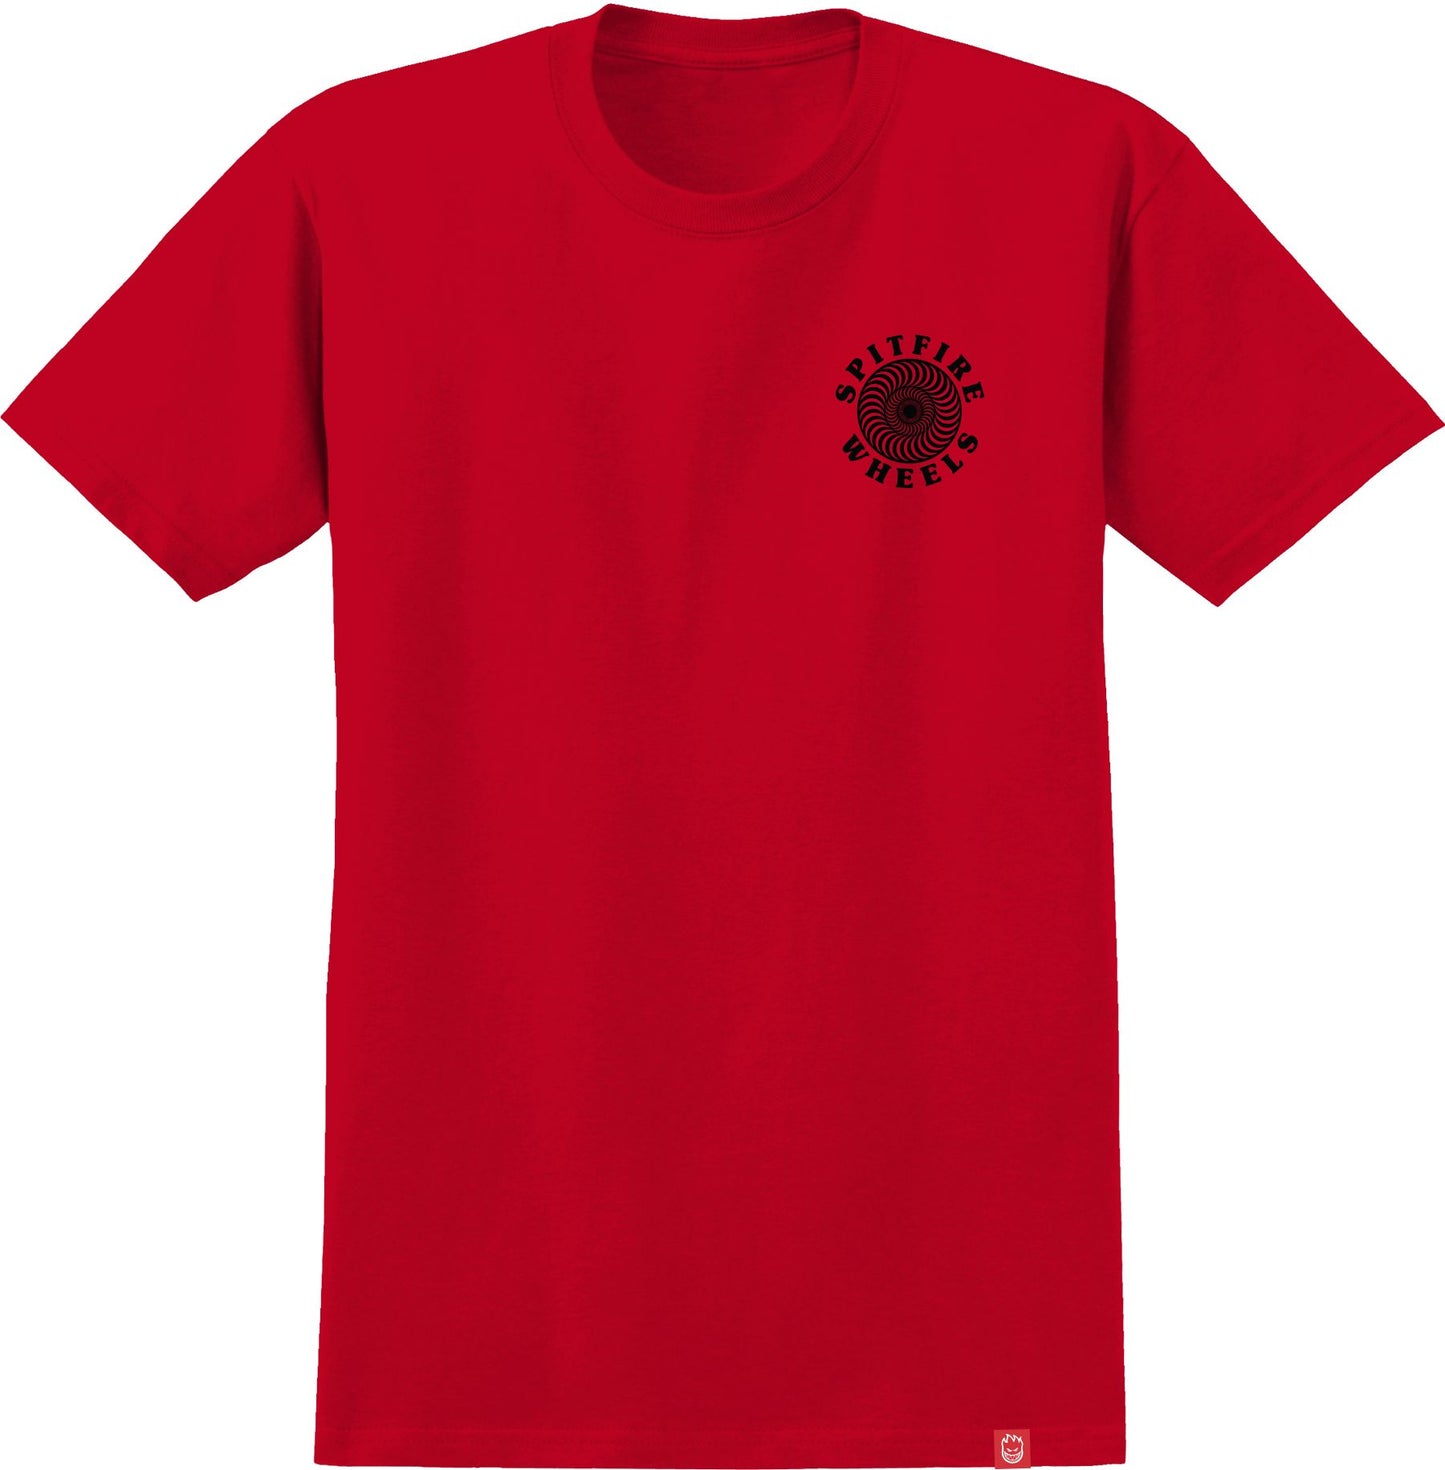 Spitfire OG Classic Fill T-Shirt - Red/ Black/ White